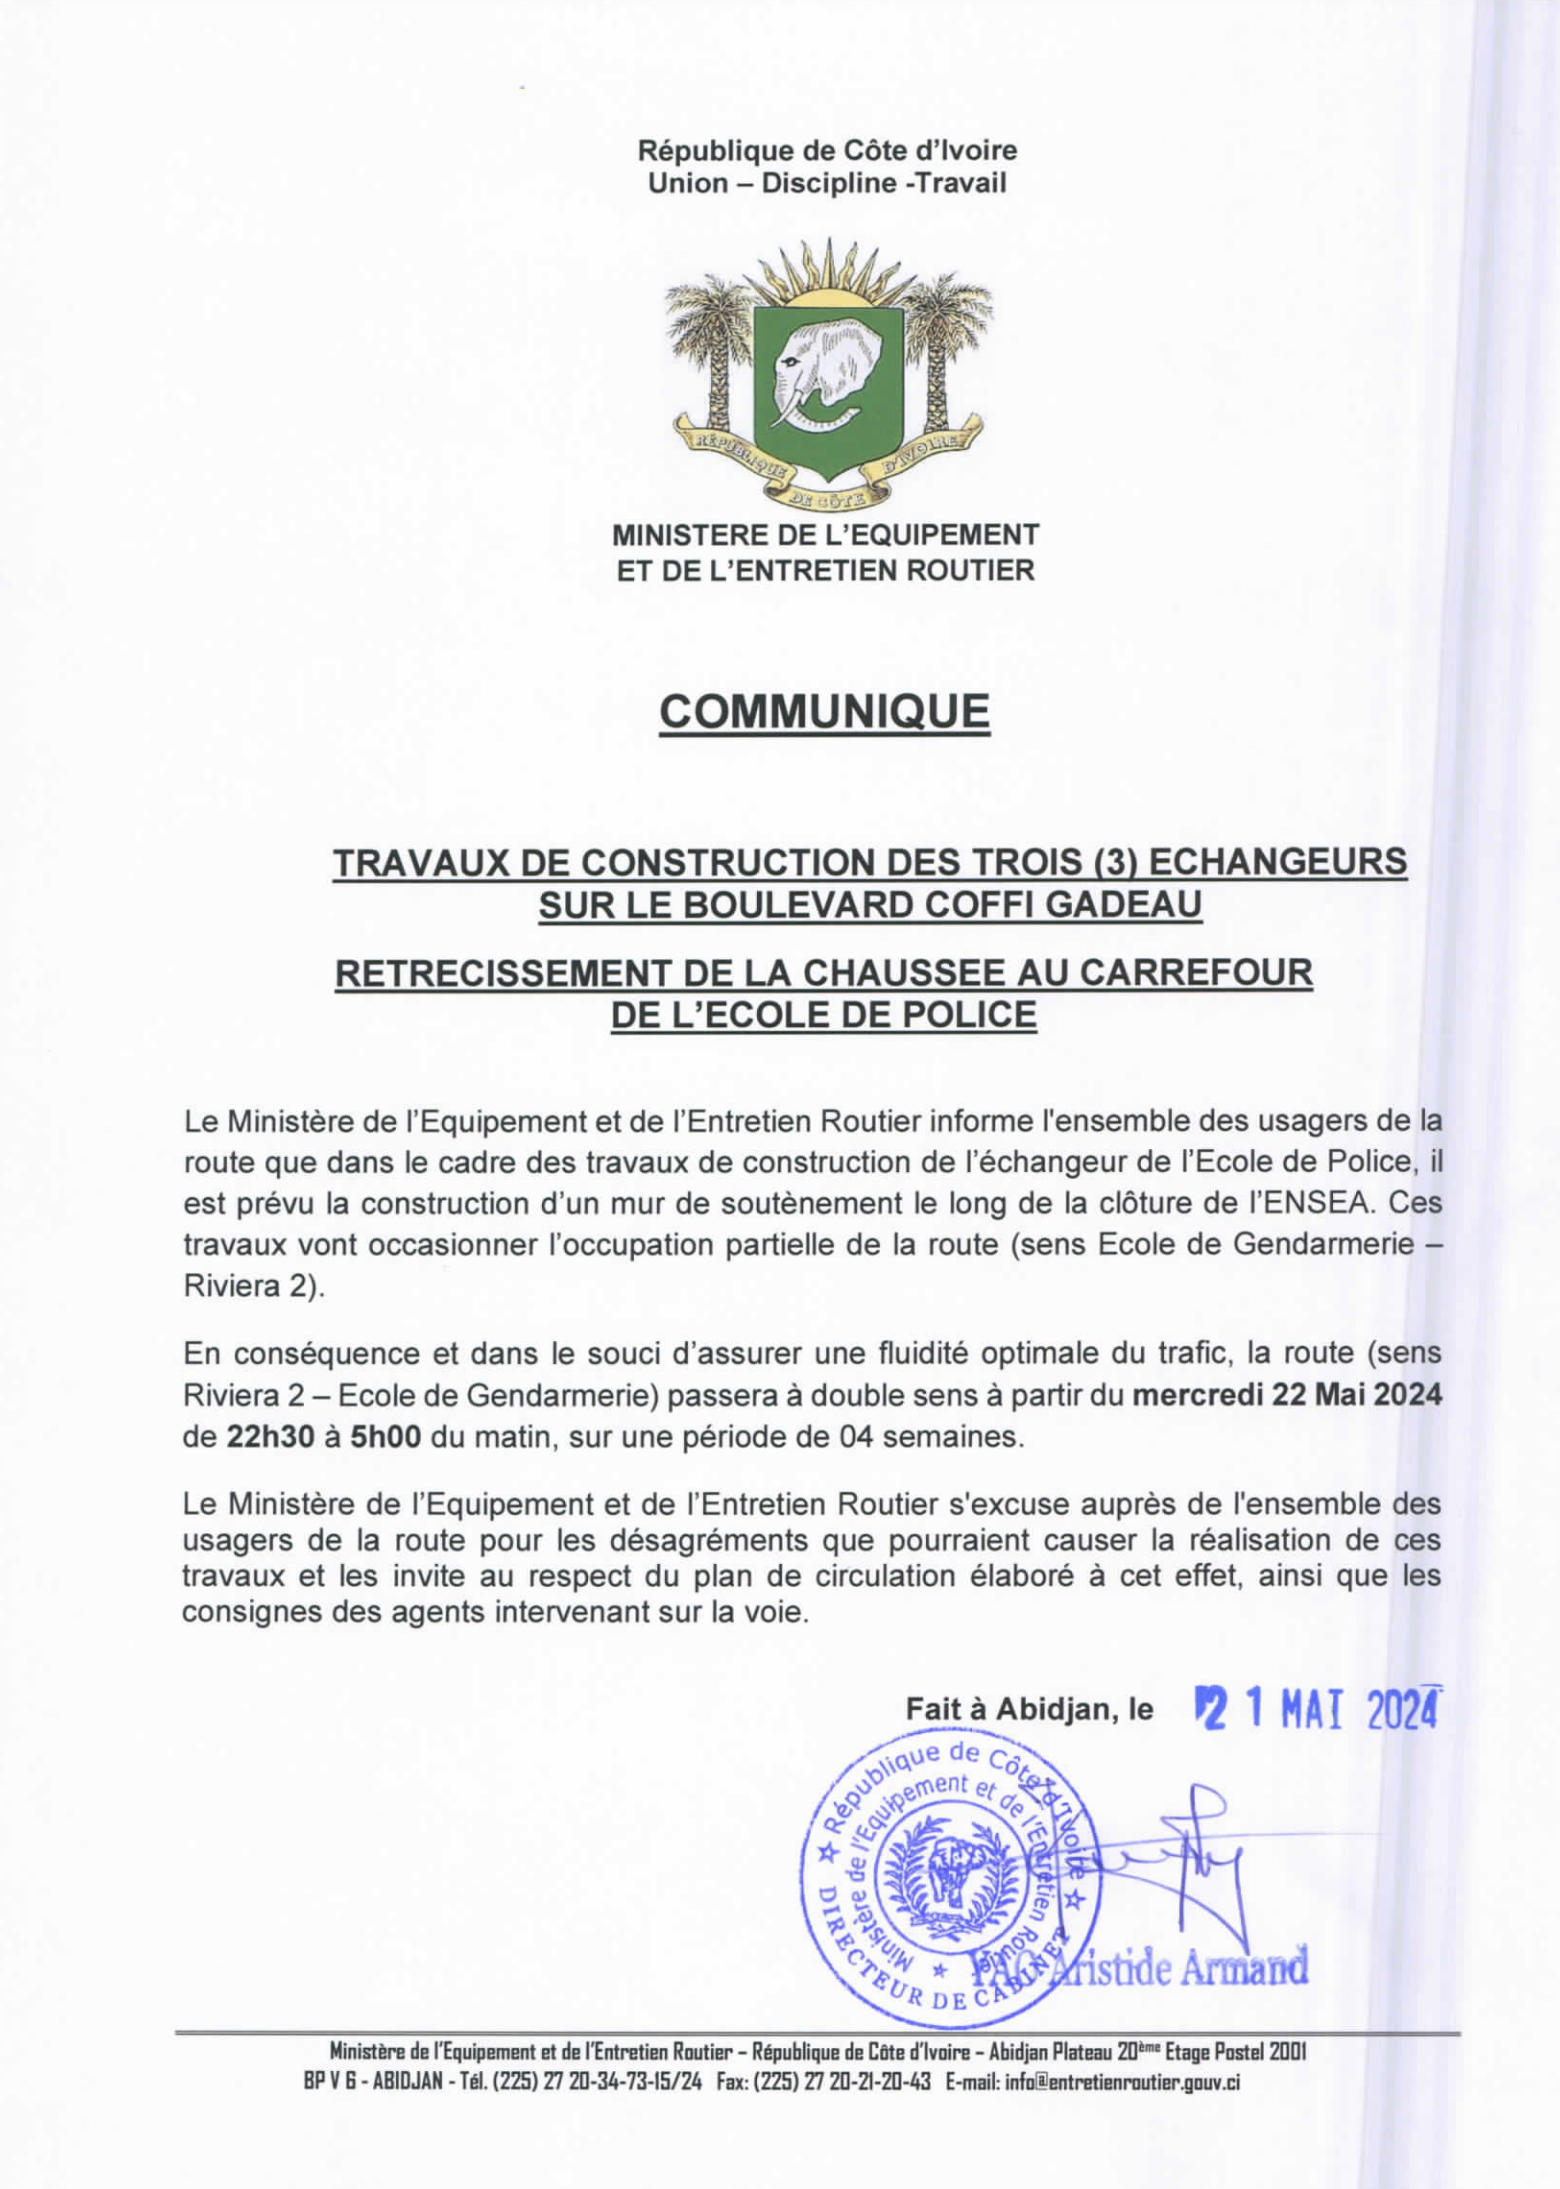 CONSTRUCTION DE 3 ECHANGEURS - TRAVAUX DE NUIT AU CARREFOUR ECOLE DE POLICE ET BASCULEMENT DU TRAFIC